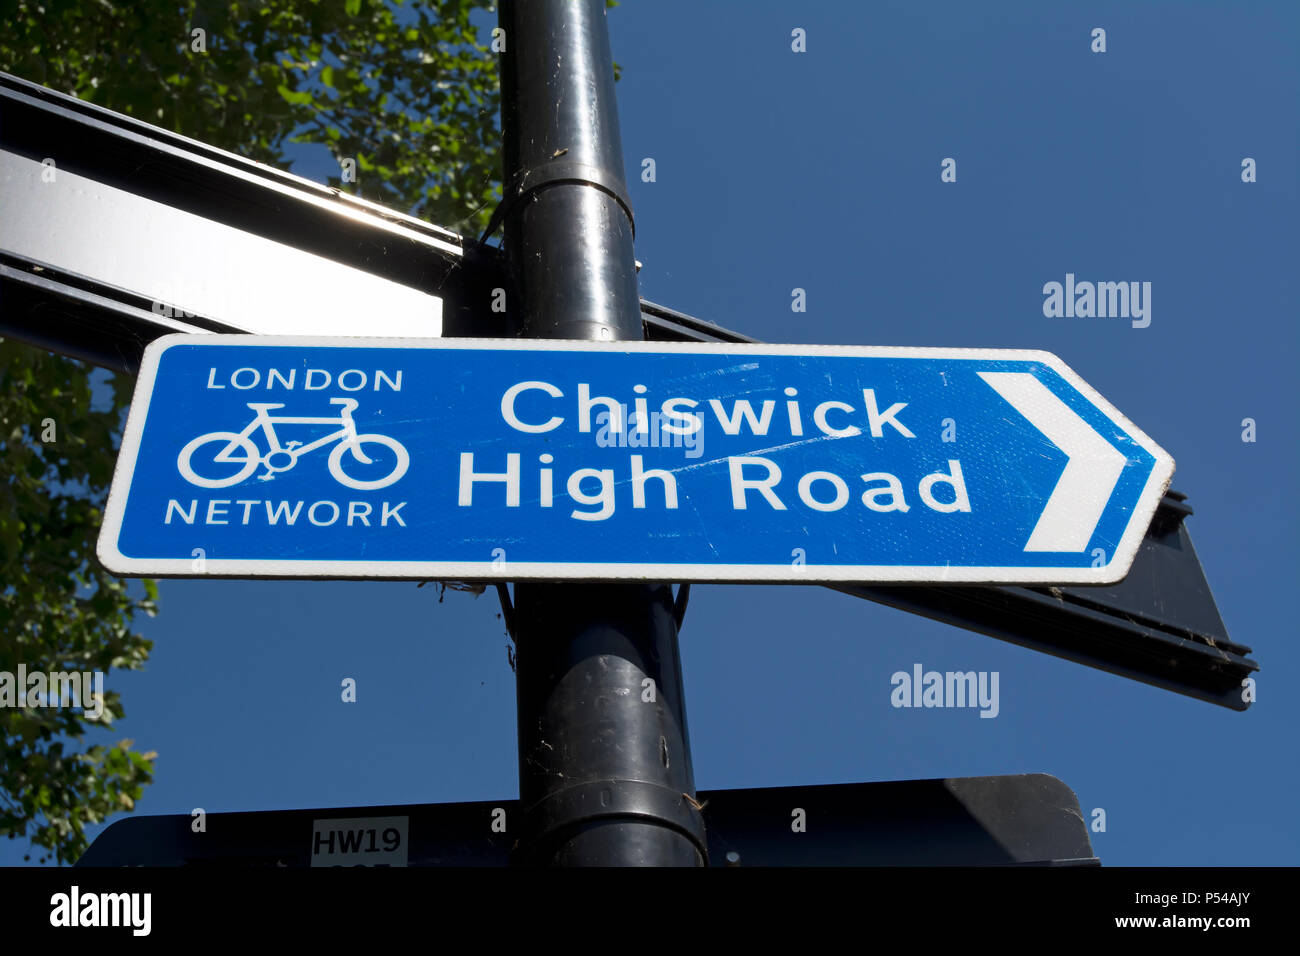 London cycle pointant vers la droite direction réseau panneau indiquant à Chiswick High Road Banque D'Images